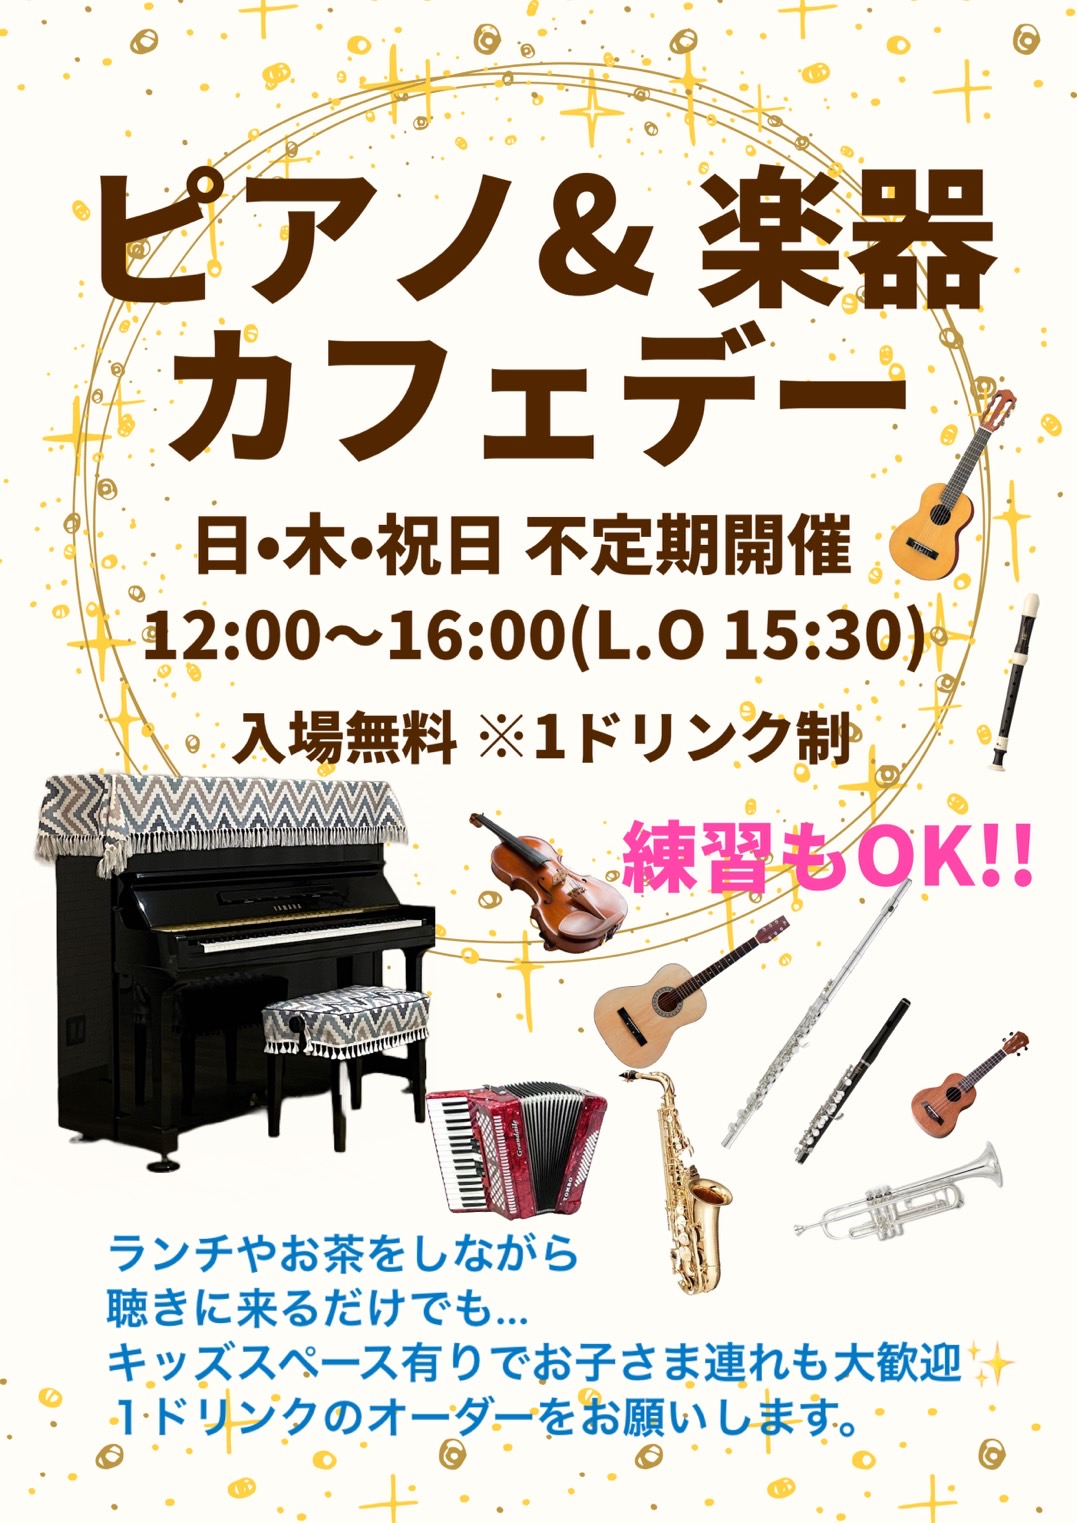 ピアノ＆楽器カフェデー(Happy Wing～羽根さん家～越谷のライブカフェ)